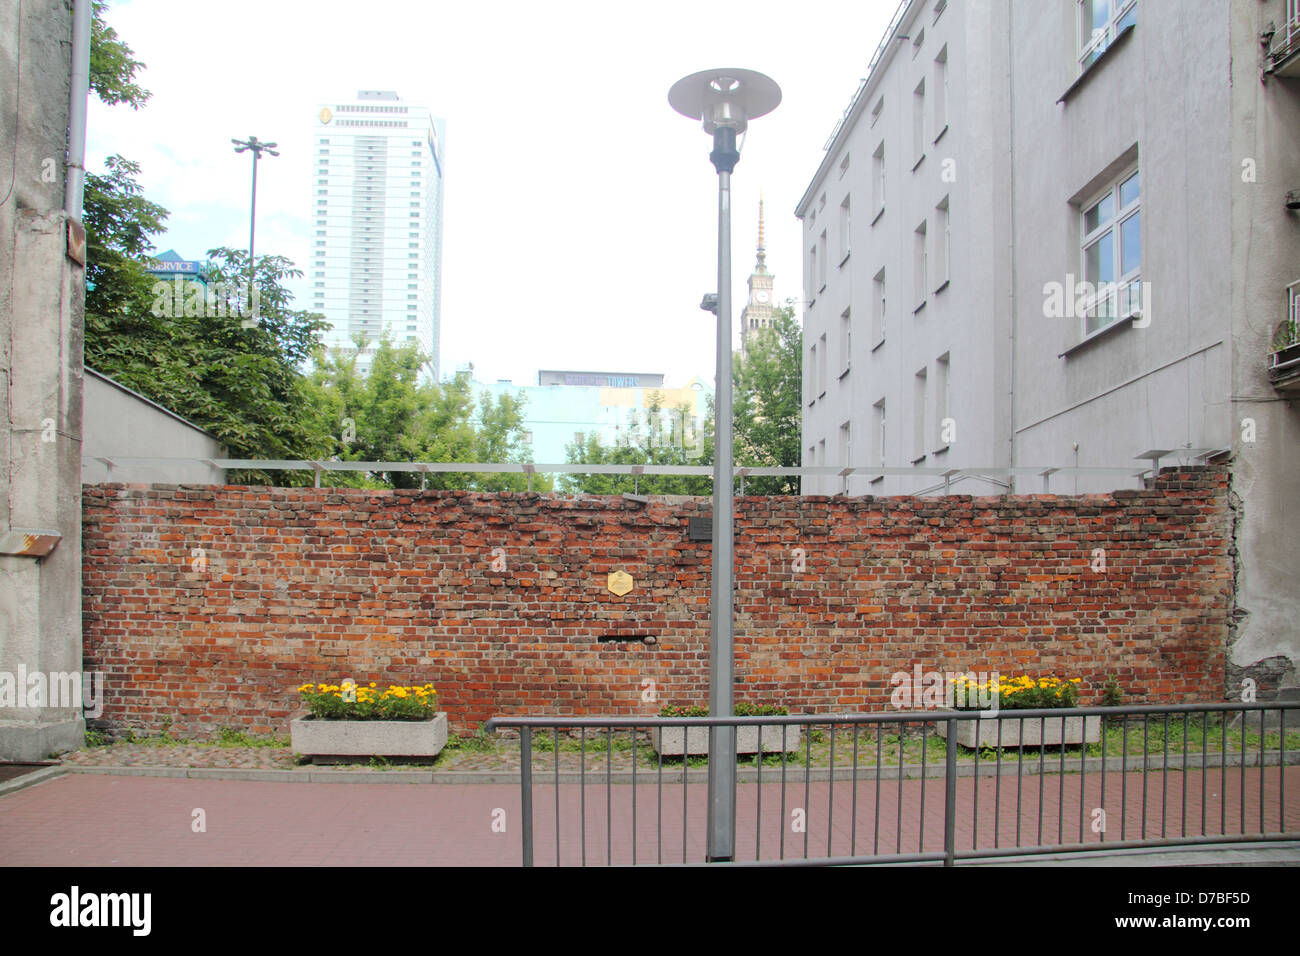 La restante parete di Varsavia Ghetto Ebraico in Polonia a Siena 55 (Mirow) Foto Stock